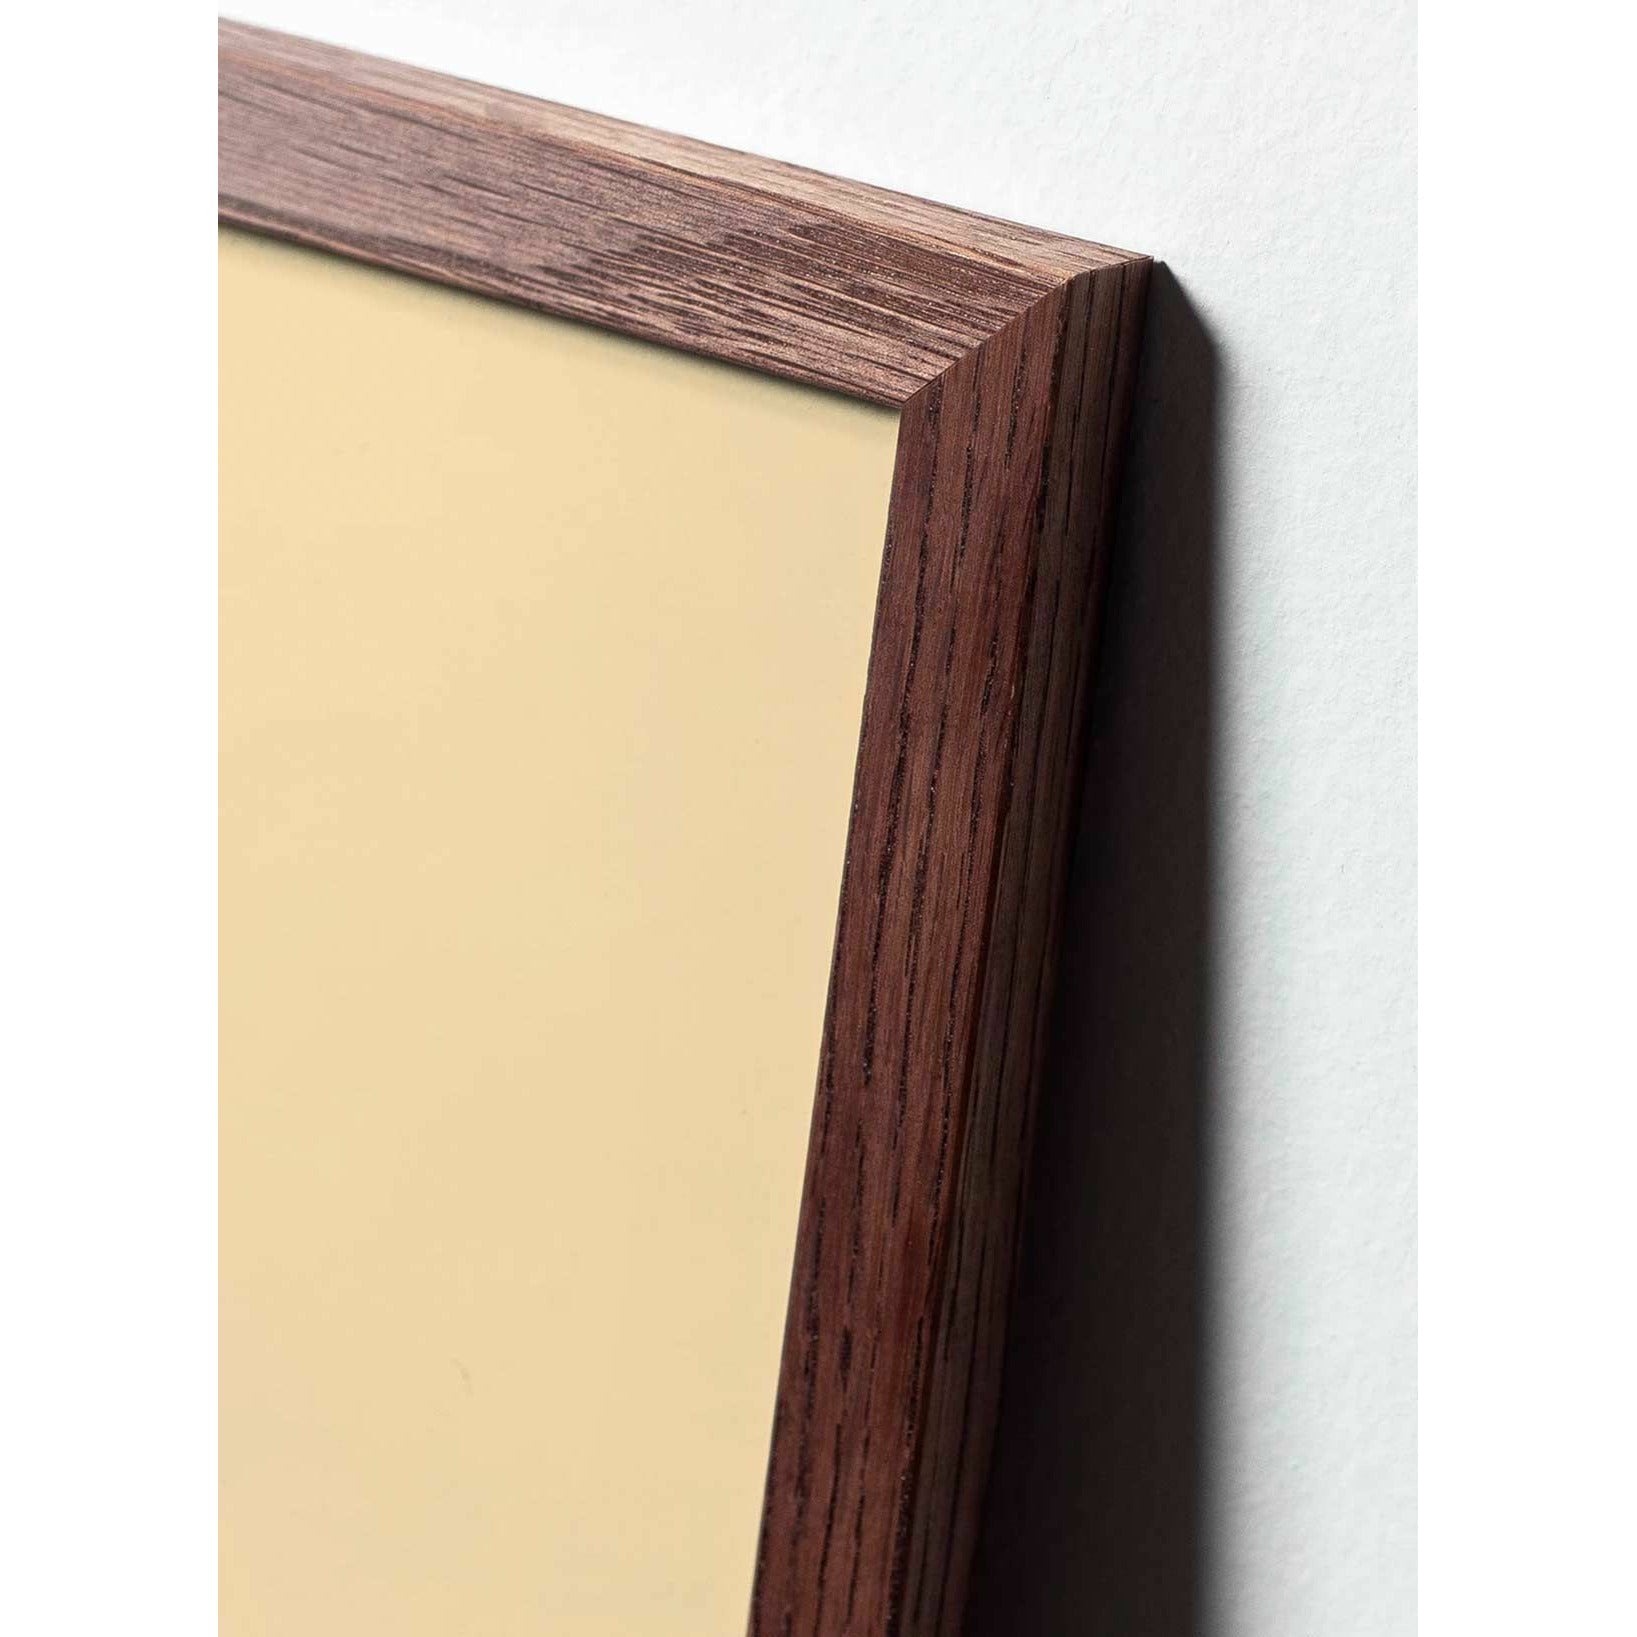 brainchild Munan ristimuodon juliste, tummapuusta valmistettu runko 50x70 cm, ruskea